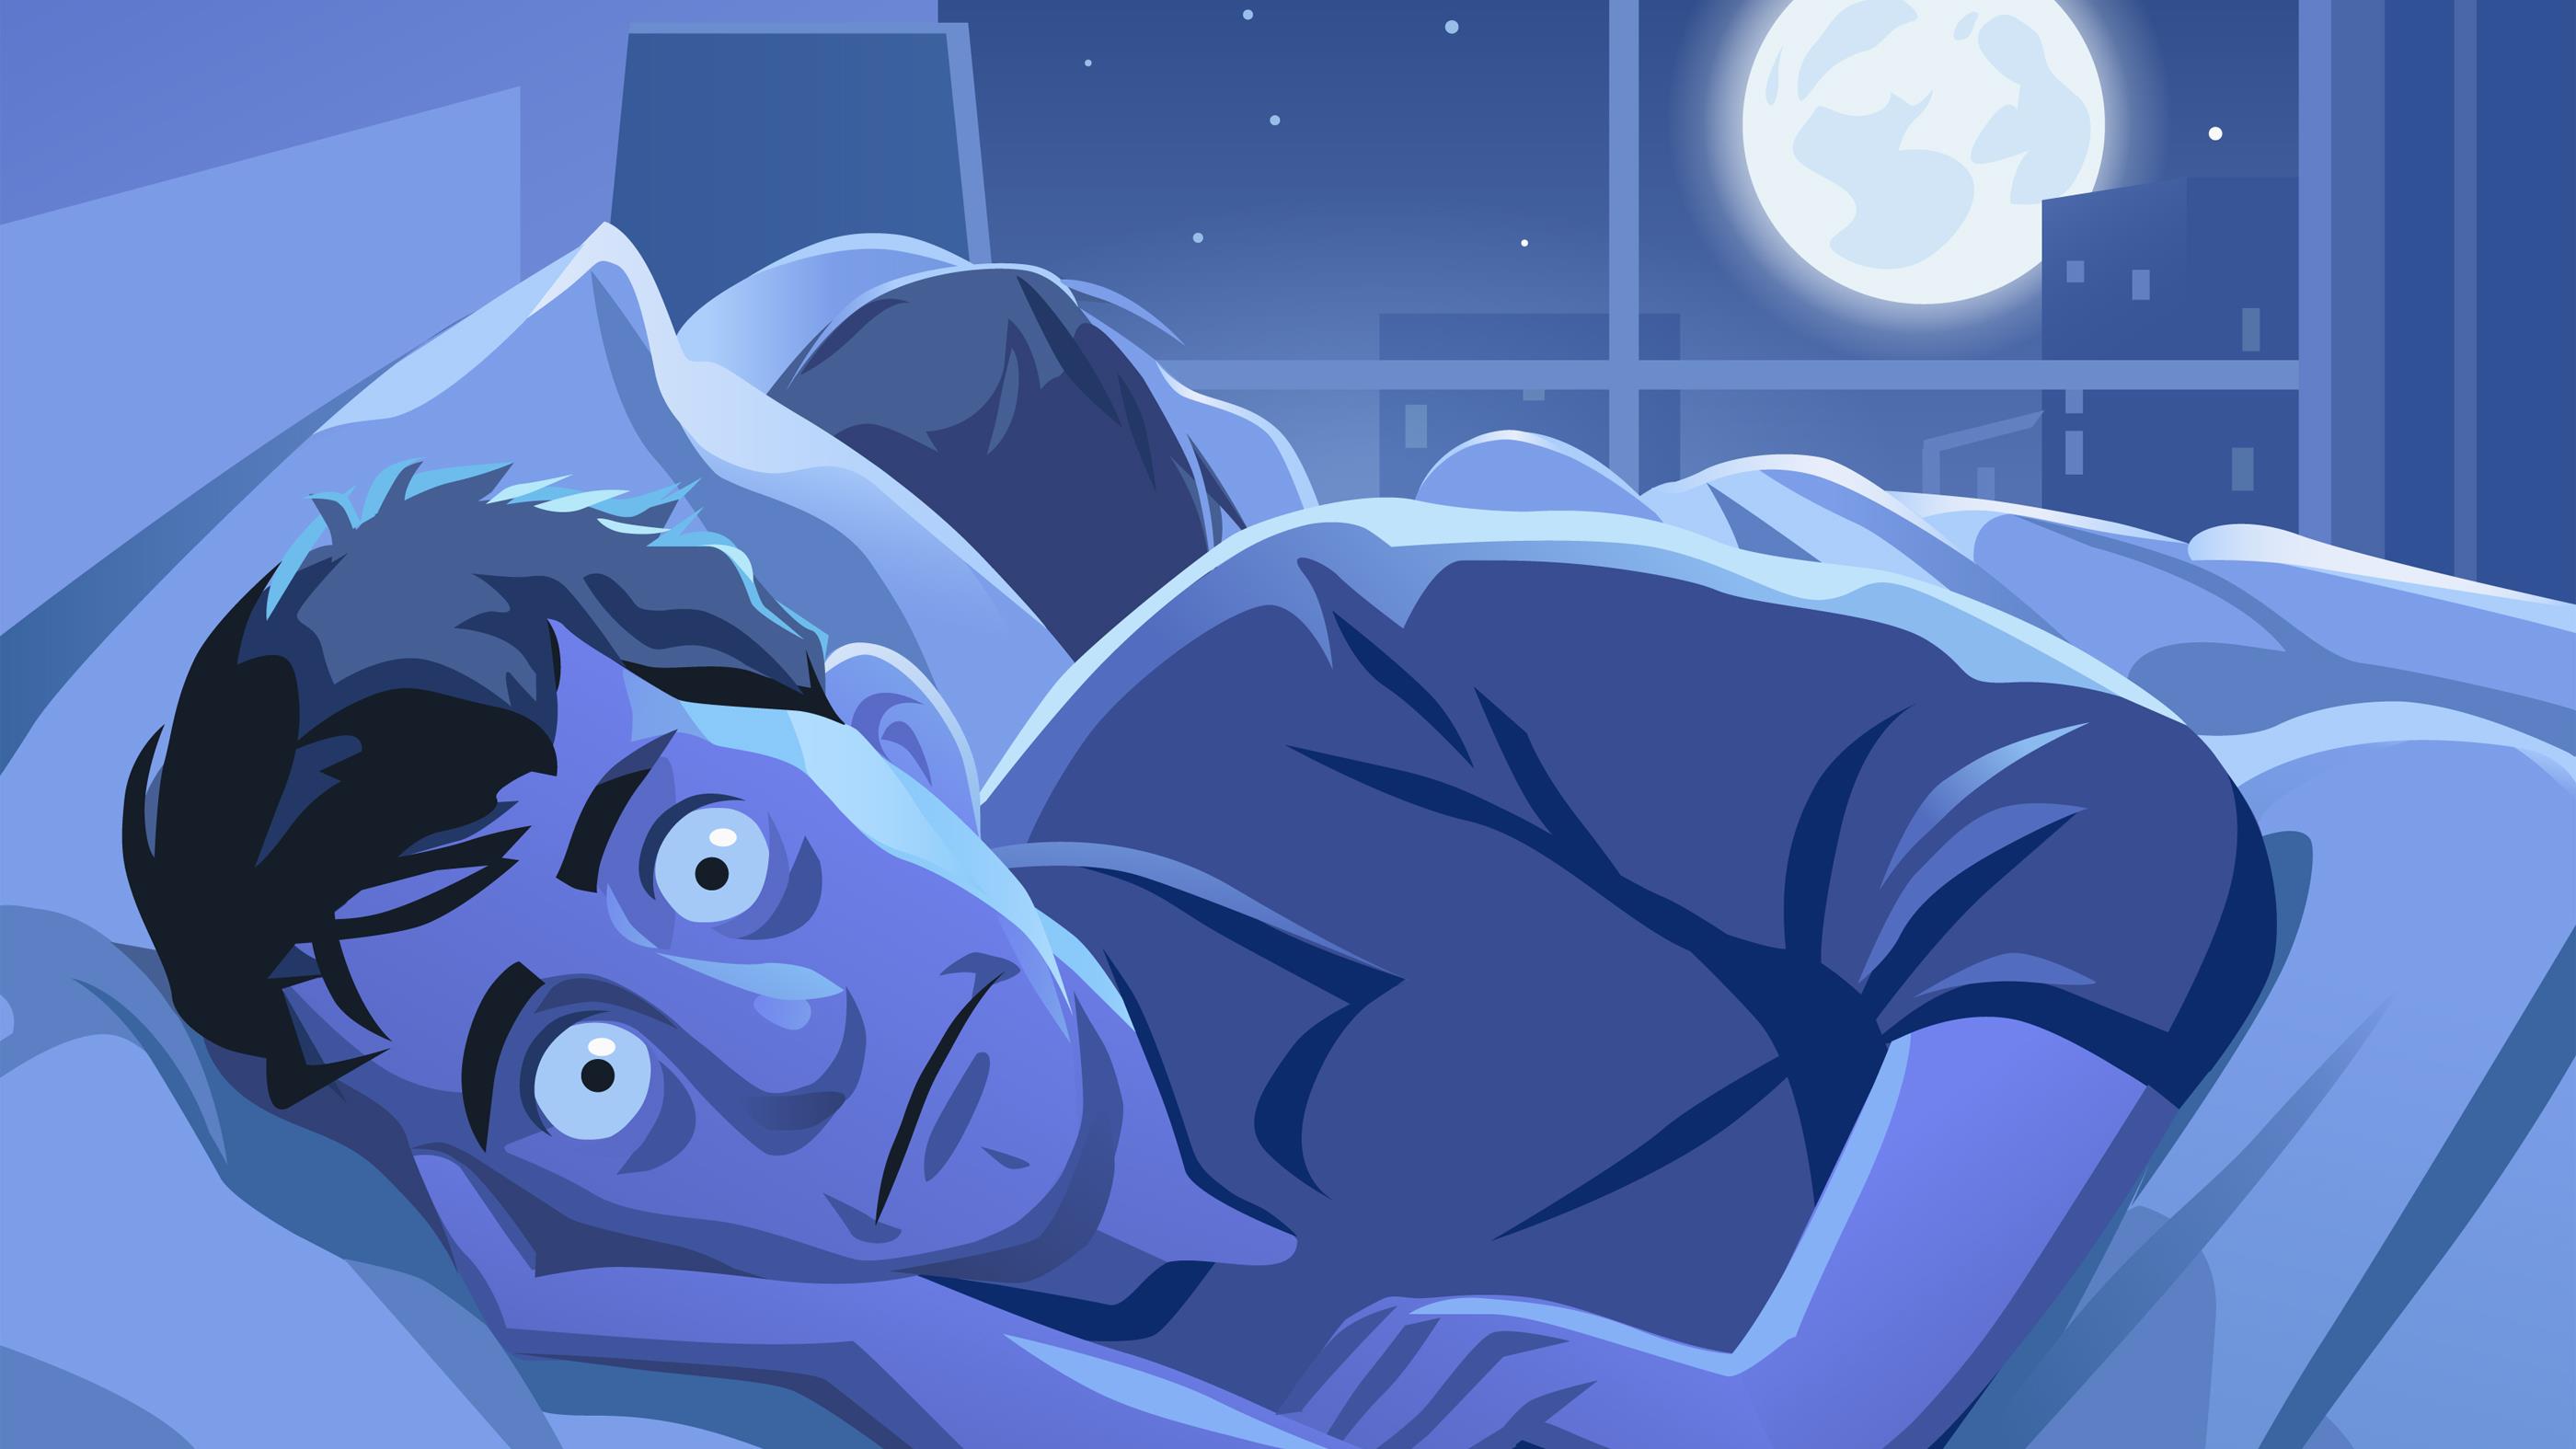 Les changements climatiques à l'origine de notre manque de sommeil ? 
Les changements climatiques à l'origine de notre manque de sommeil ?